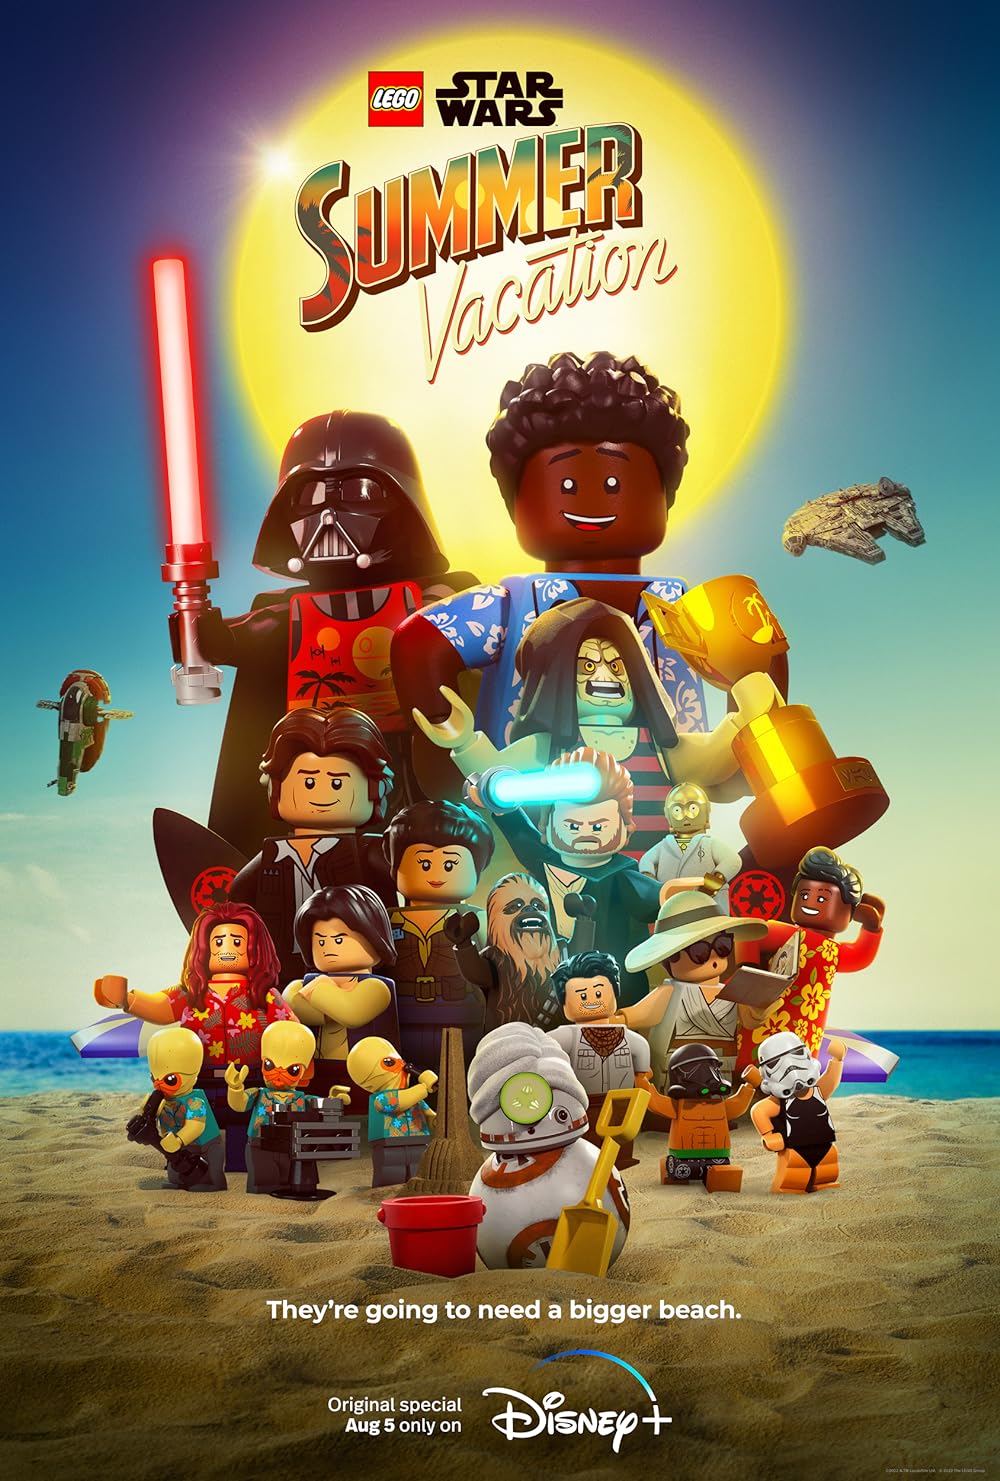 Lego Star Wars Summer Vacation (2022) 256Kbps 24Fps 48Khz 5.1Ch Disney+ DD+ E-AC3 Turkish Audio TAC